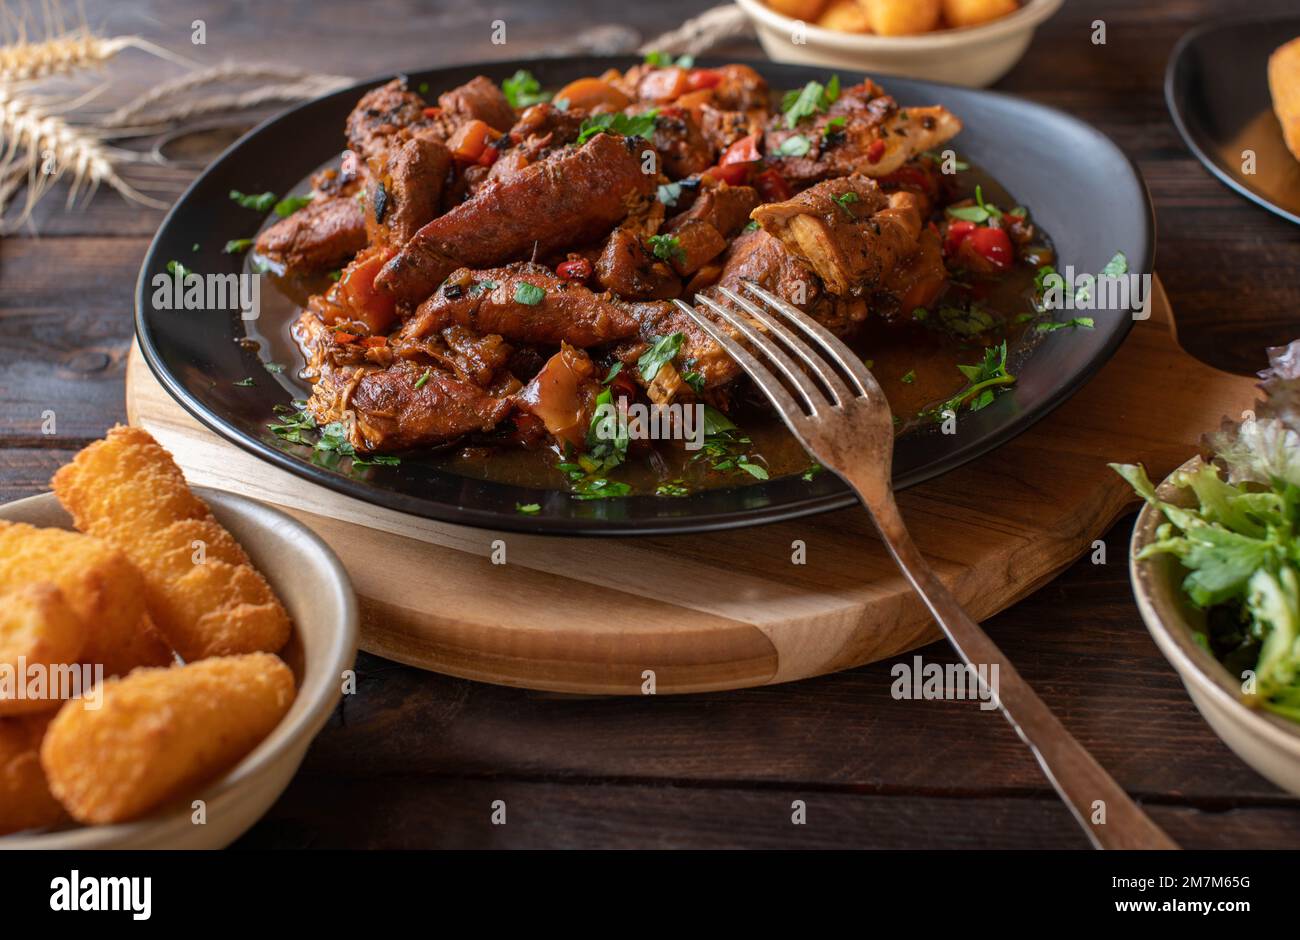 Ragoût de poulet africain ou curry avec légumes épicés sur table en bois Banque D'Images